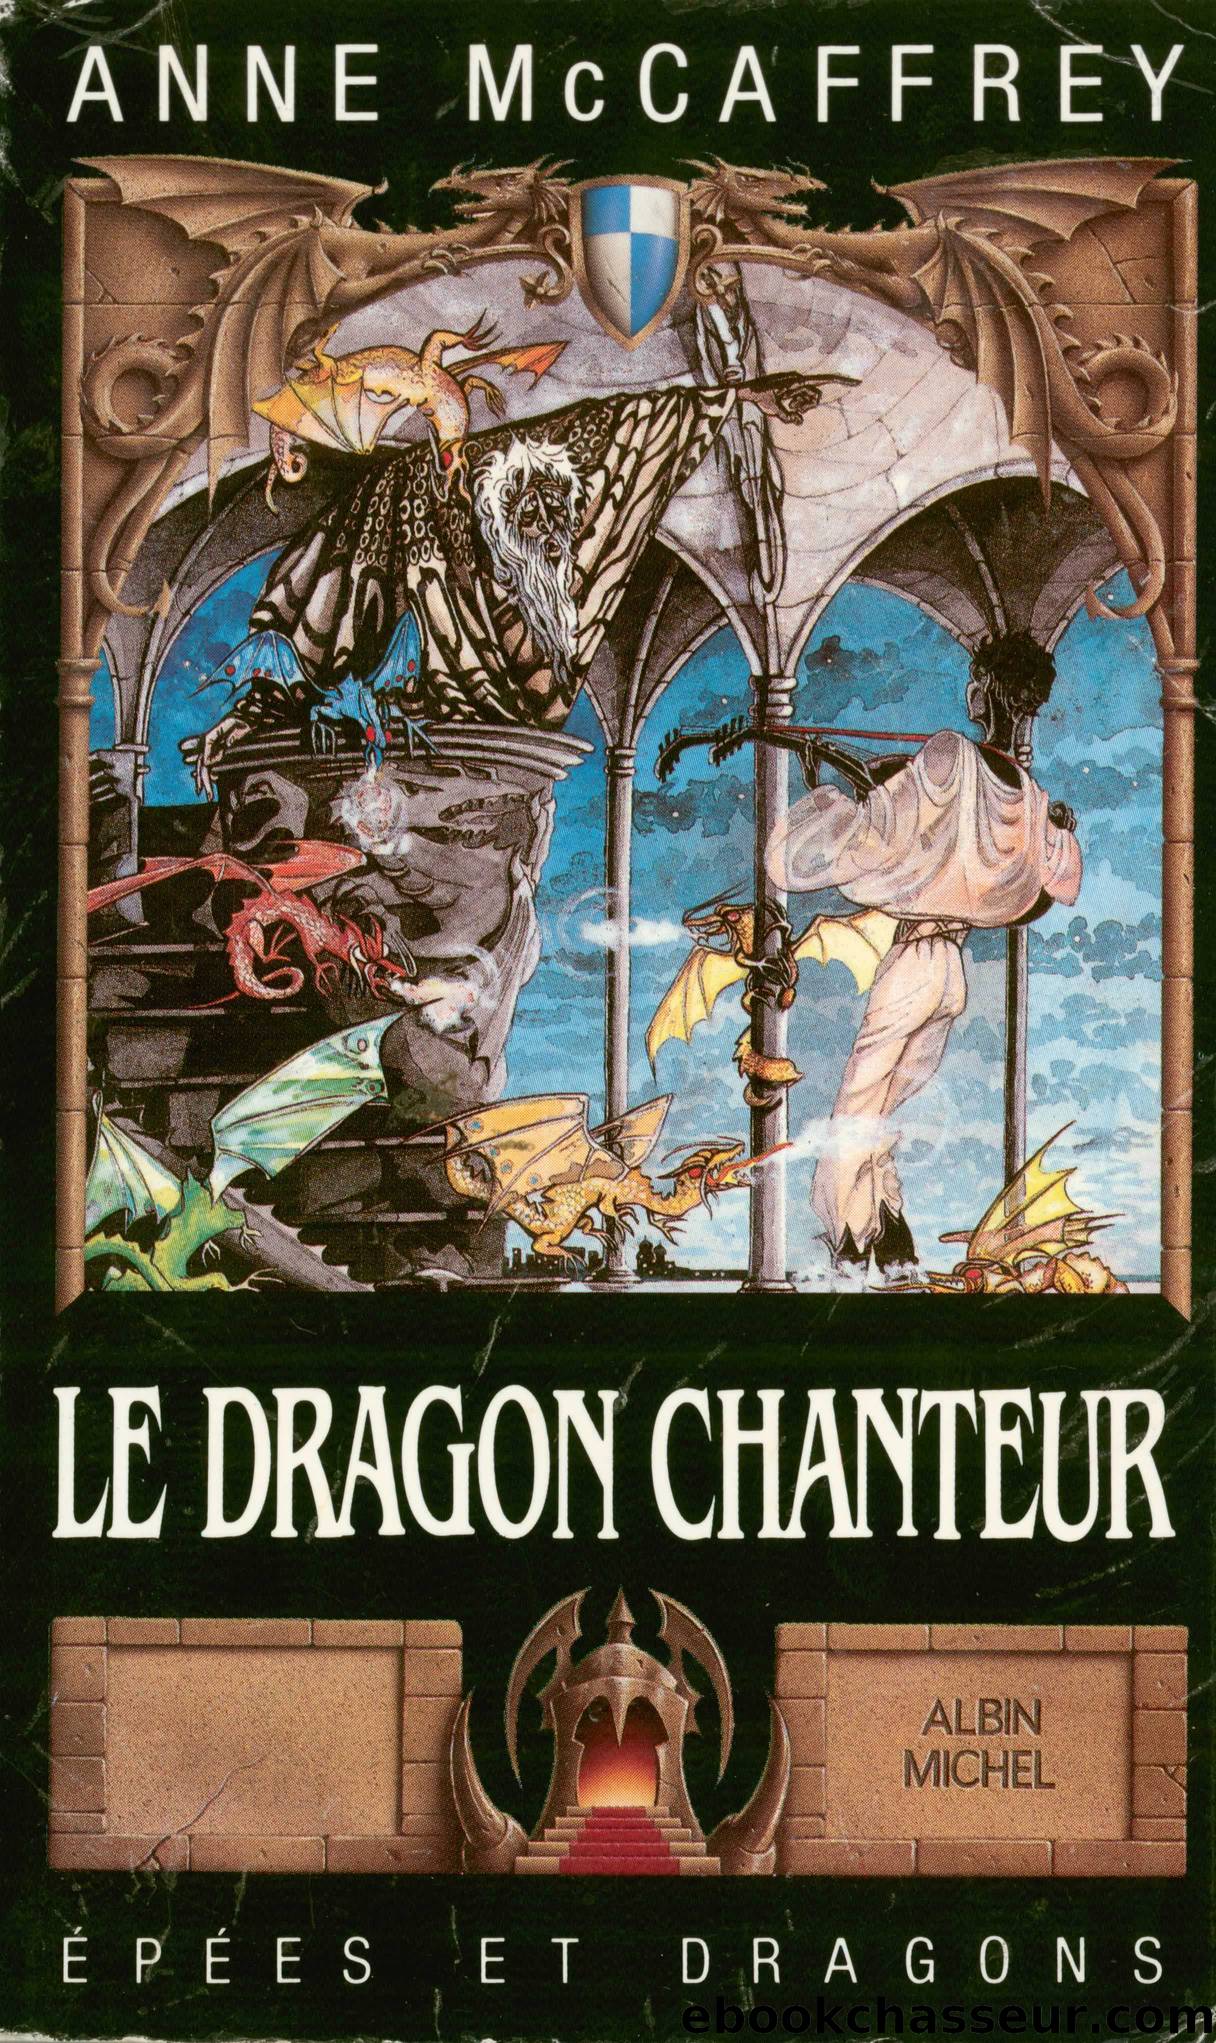 Le dragon chanteur by Anne Mccaffrey